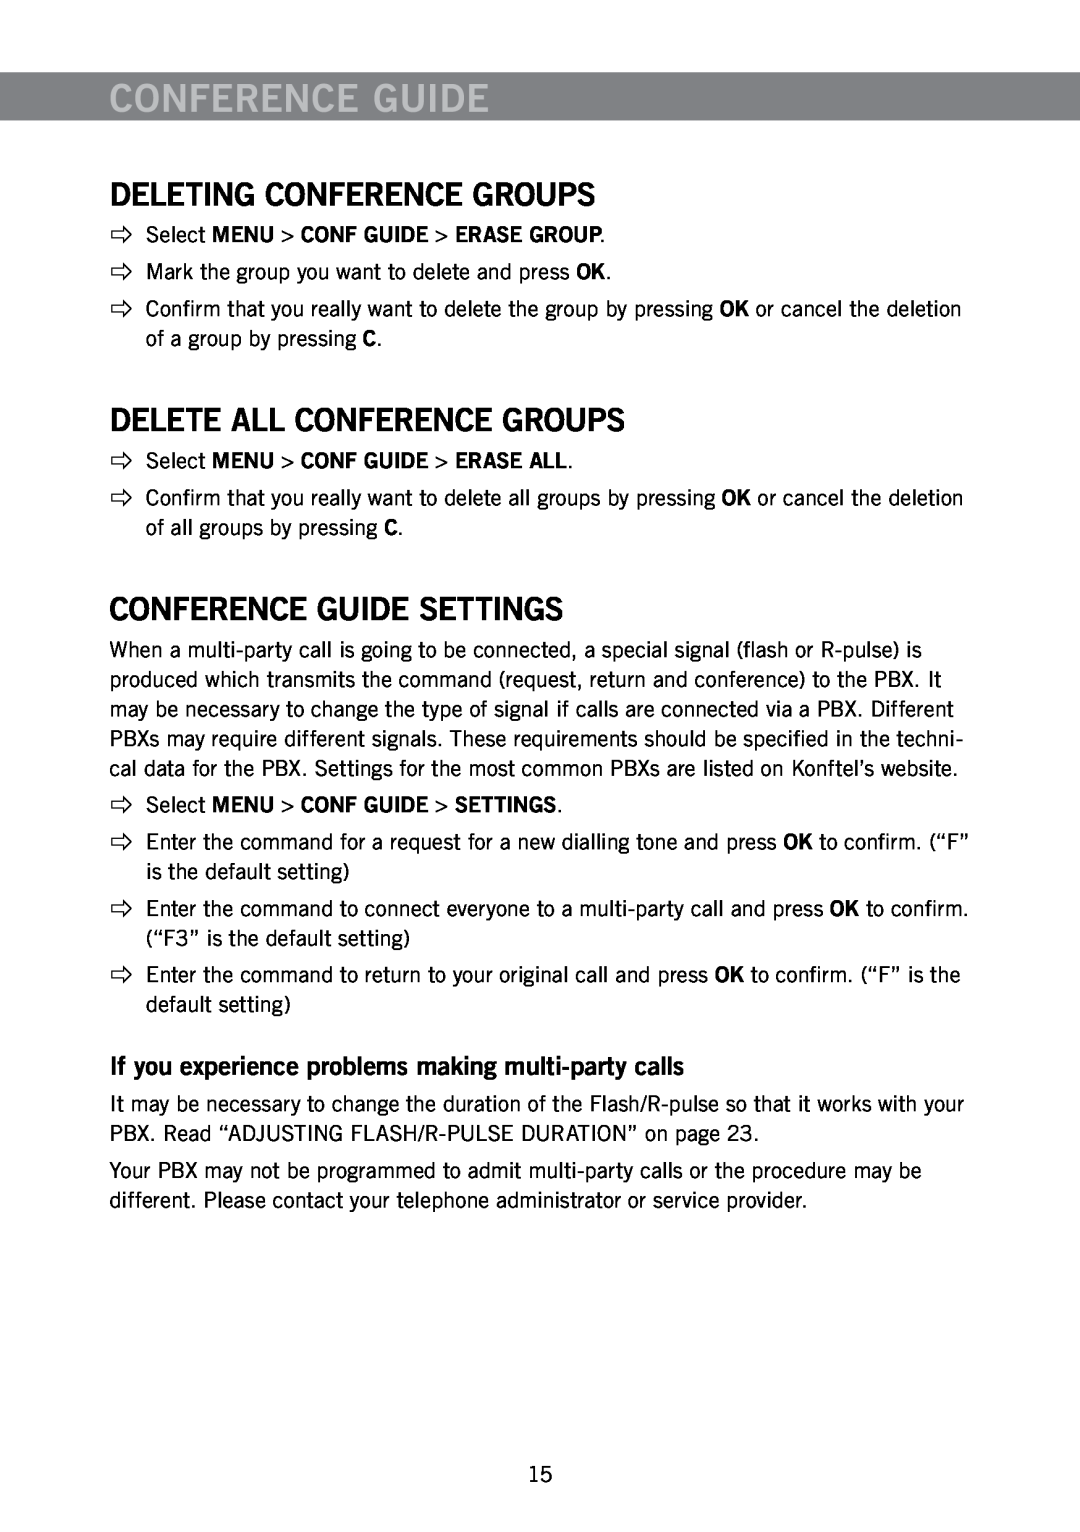 Konftel 300 manual Deleting Conference Groups, Delete All Conference Groups, Conference Guide Settings 